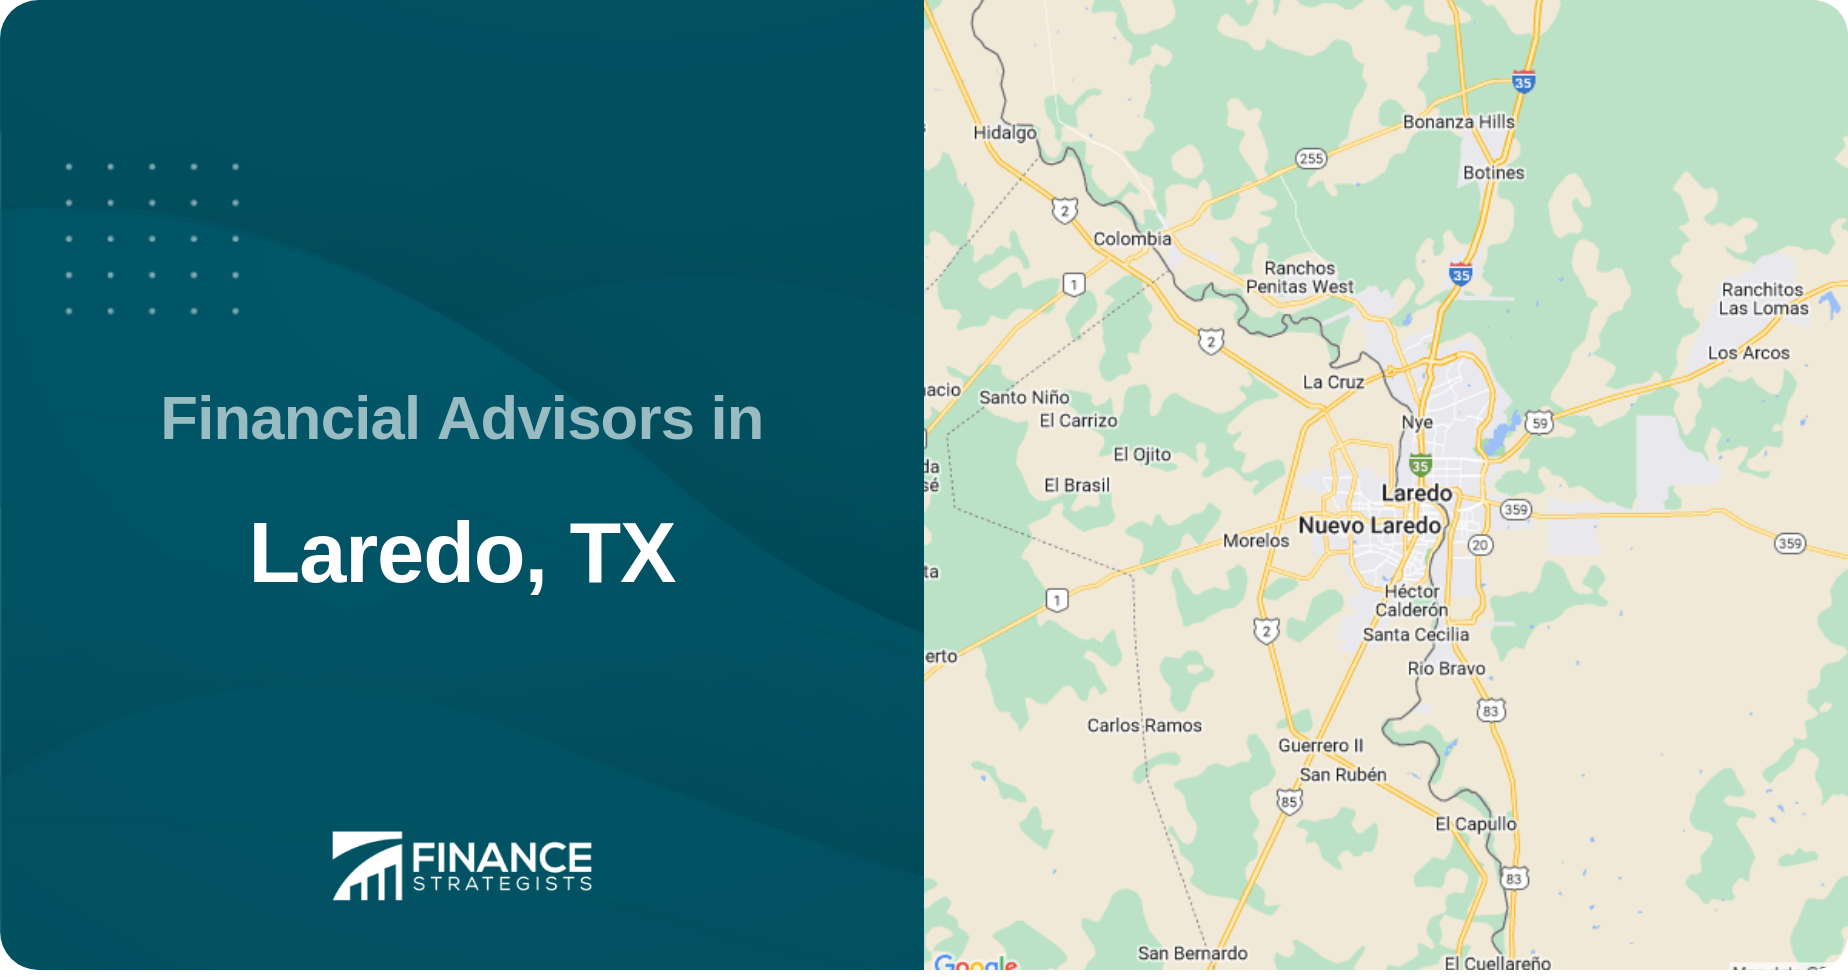 Financial Advisors in Laredo, TX